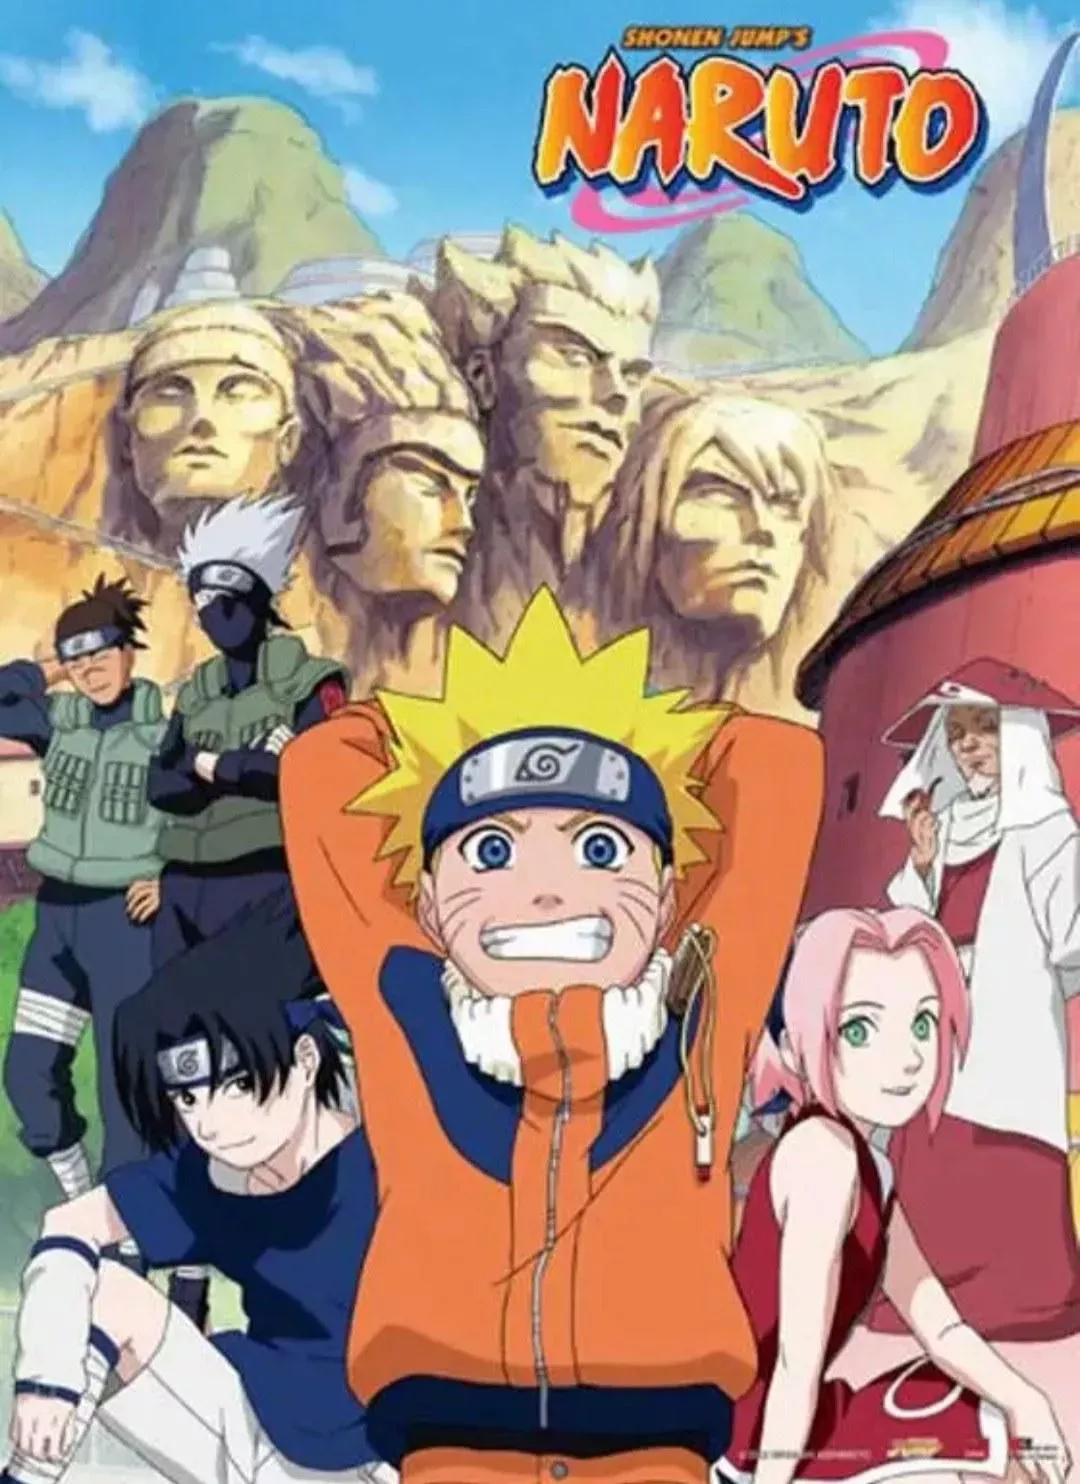 Naruto anime poster.